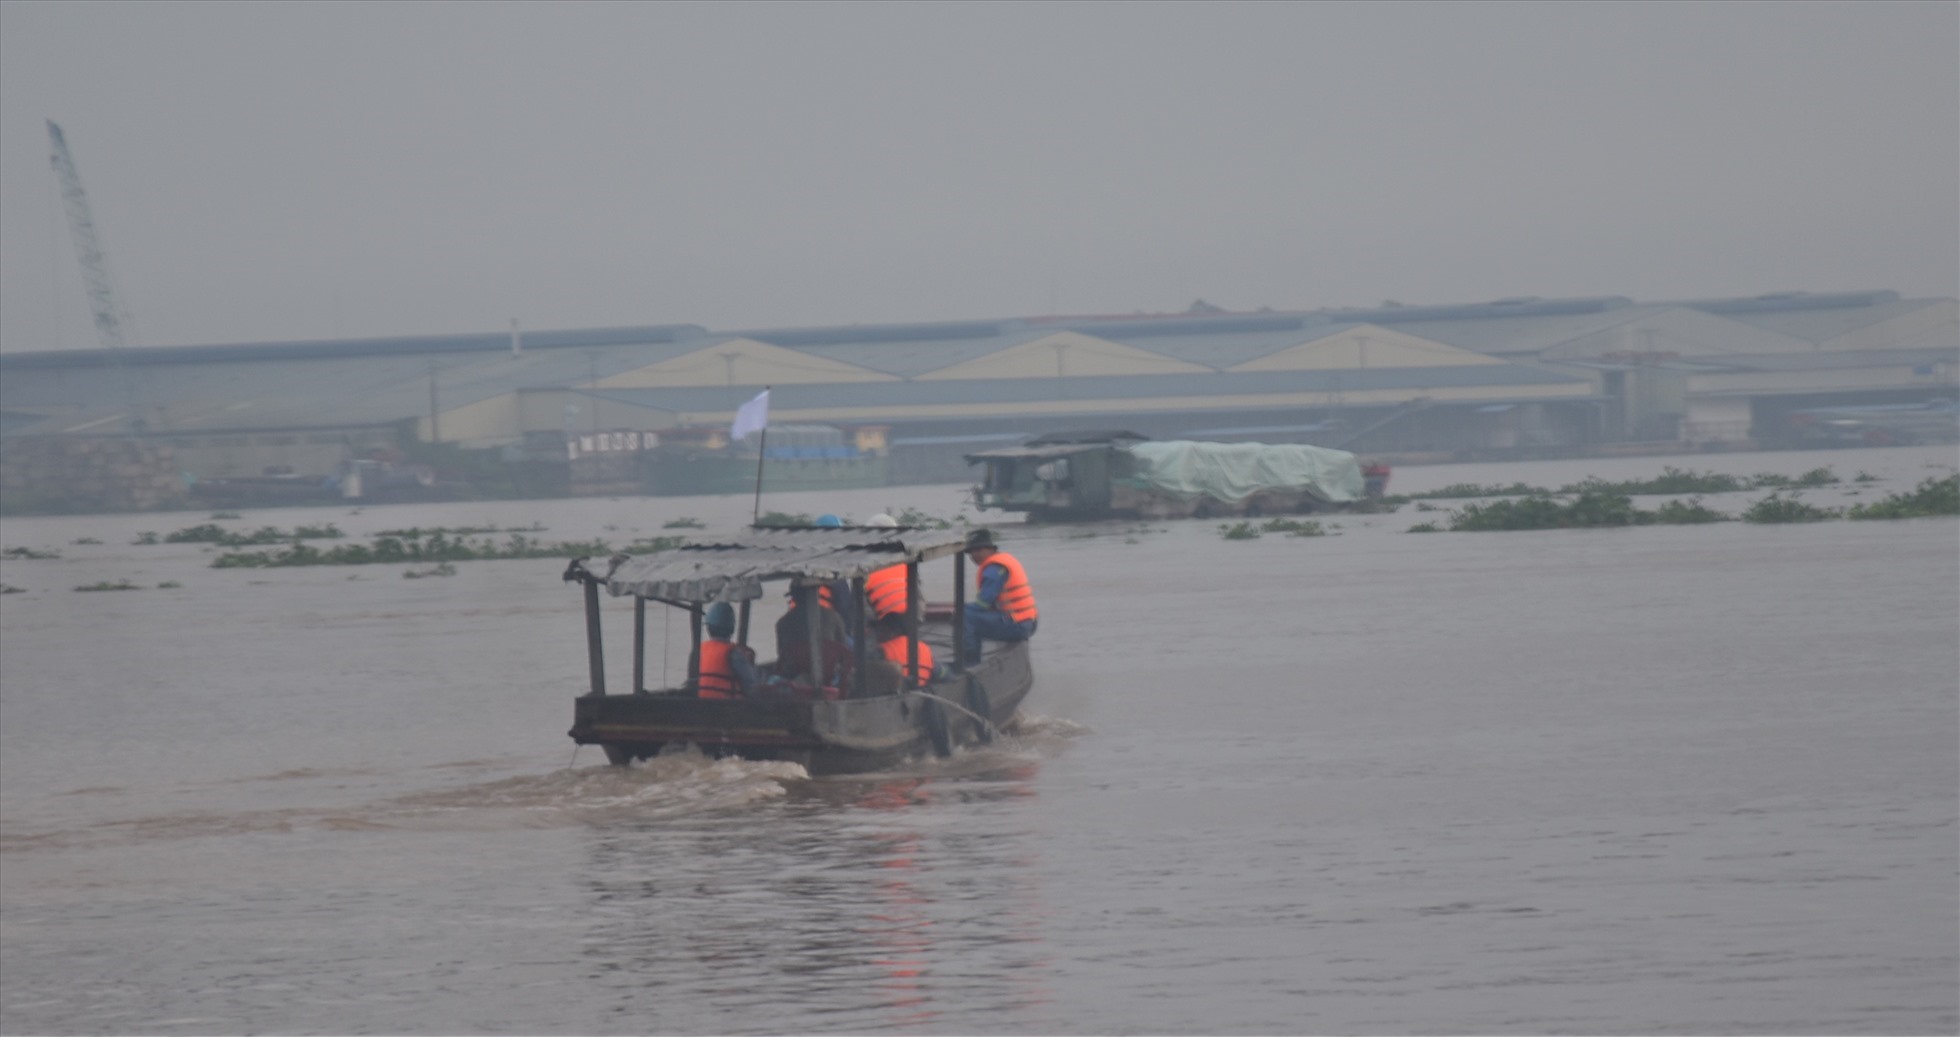 Khoảng 48 giờ sau khi một công nhân rơi xuống sông Tiền mất tích xảy ra tại tháp trụ T16 của cầu Mỹ Thuận 2 phía bờ Vĩnh Long, lực lượng đã tìm thấy thi thể nạn nhân. Ảnh:Th.N